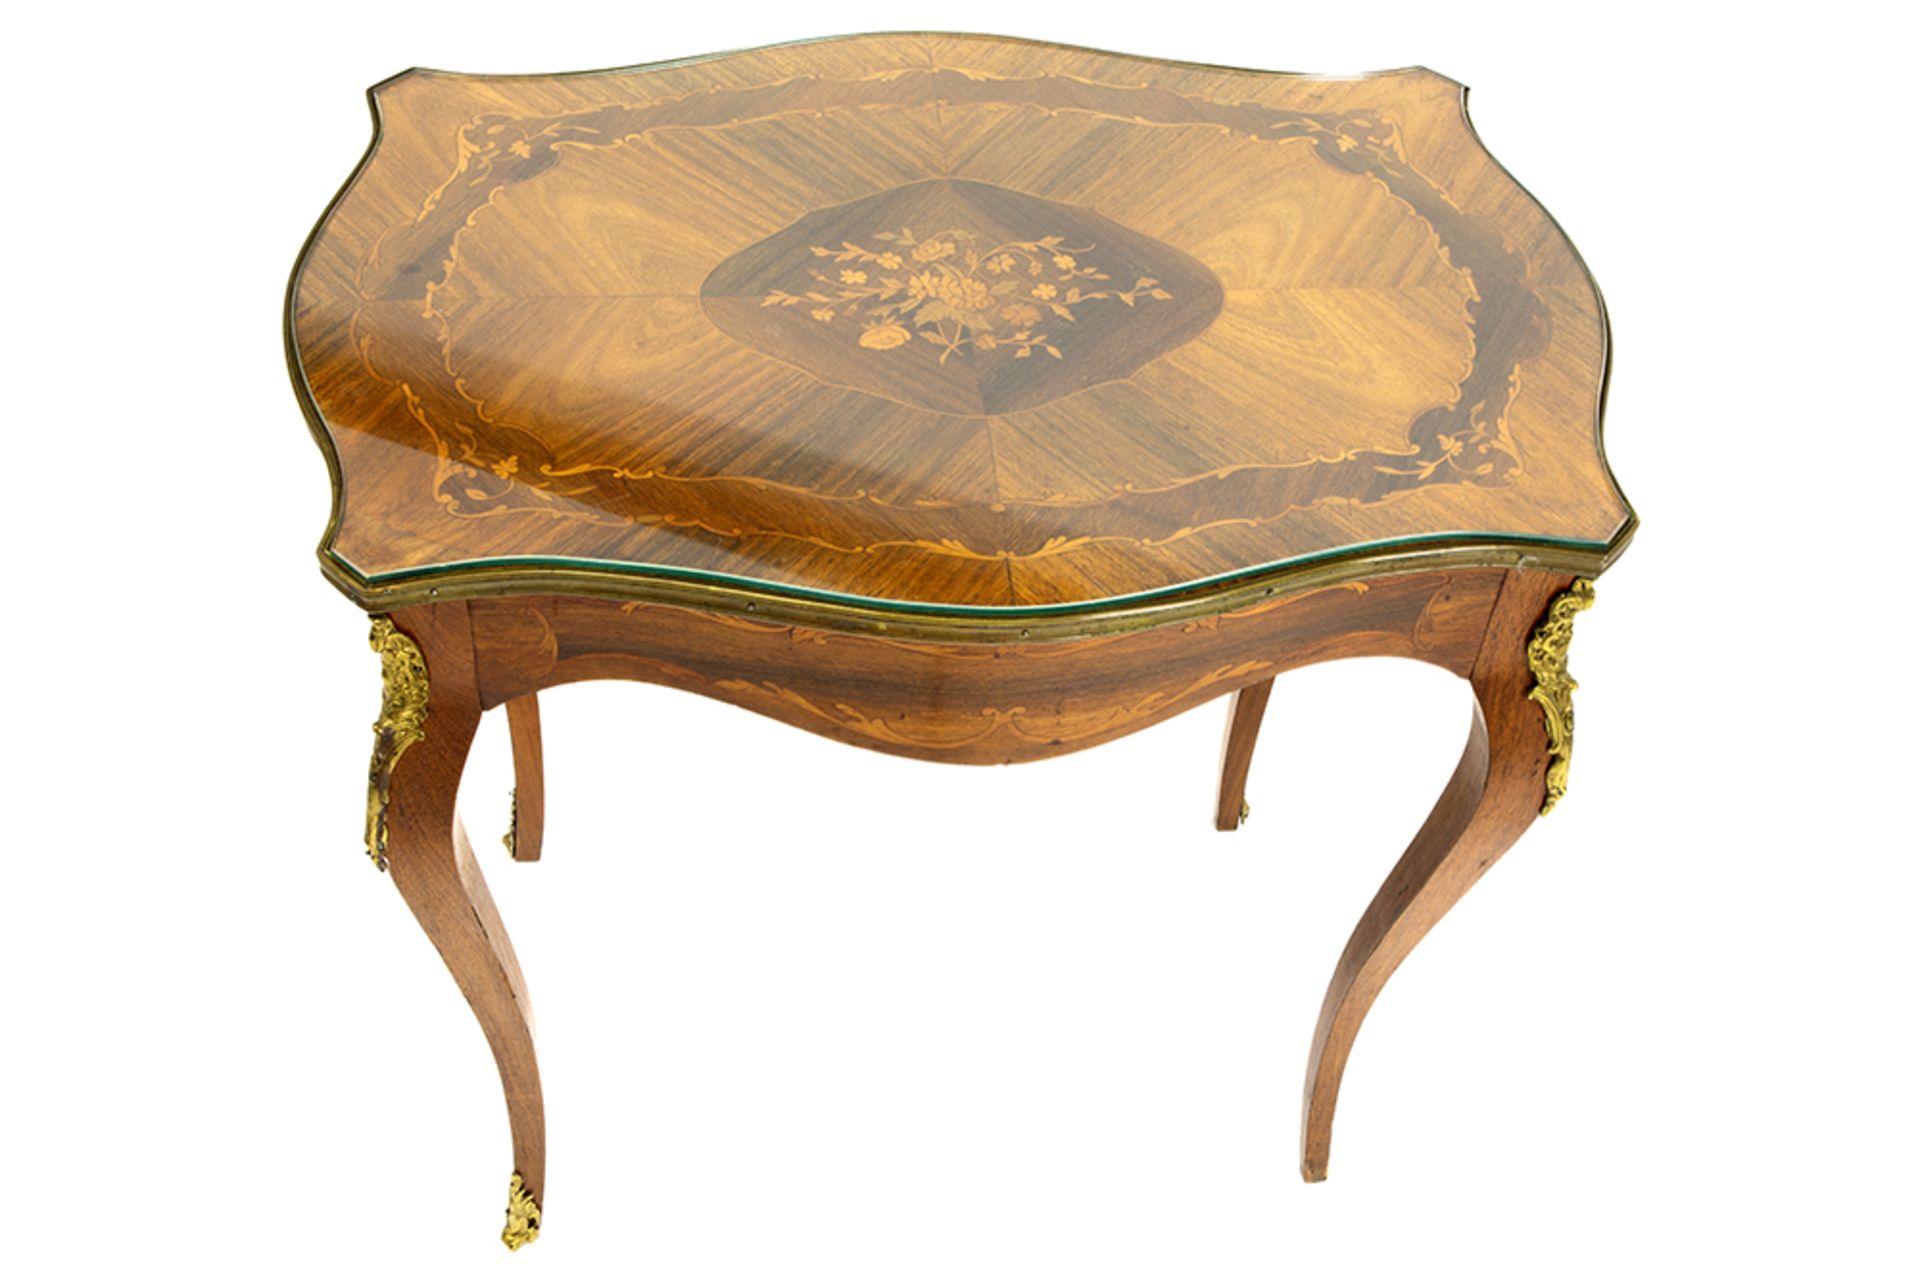 Louis XV style occasional table with marquetry || Bijzettafel in Lodewijk XV-stijl versierd met - Bild 2 aus 2